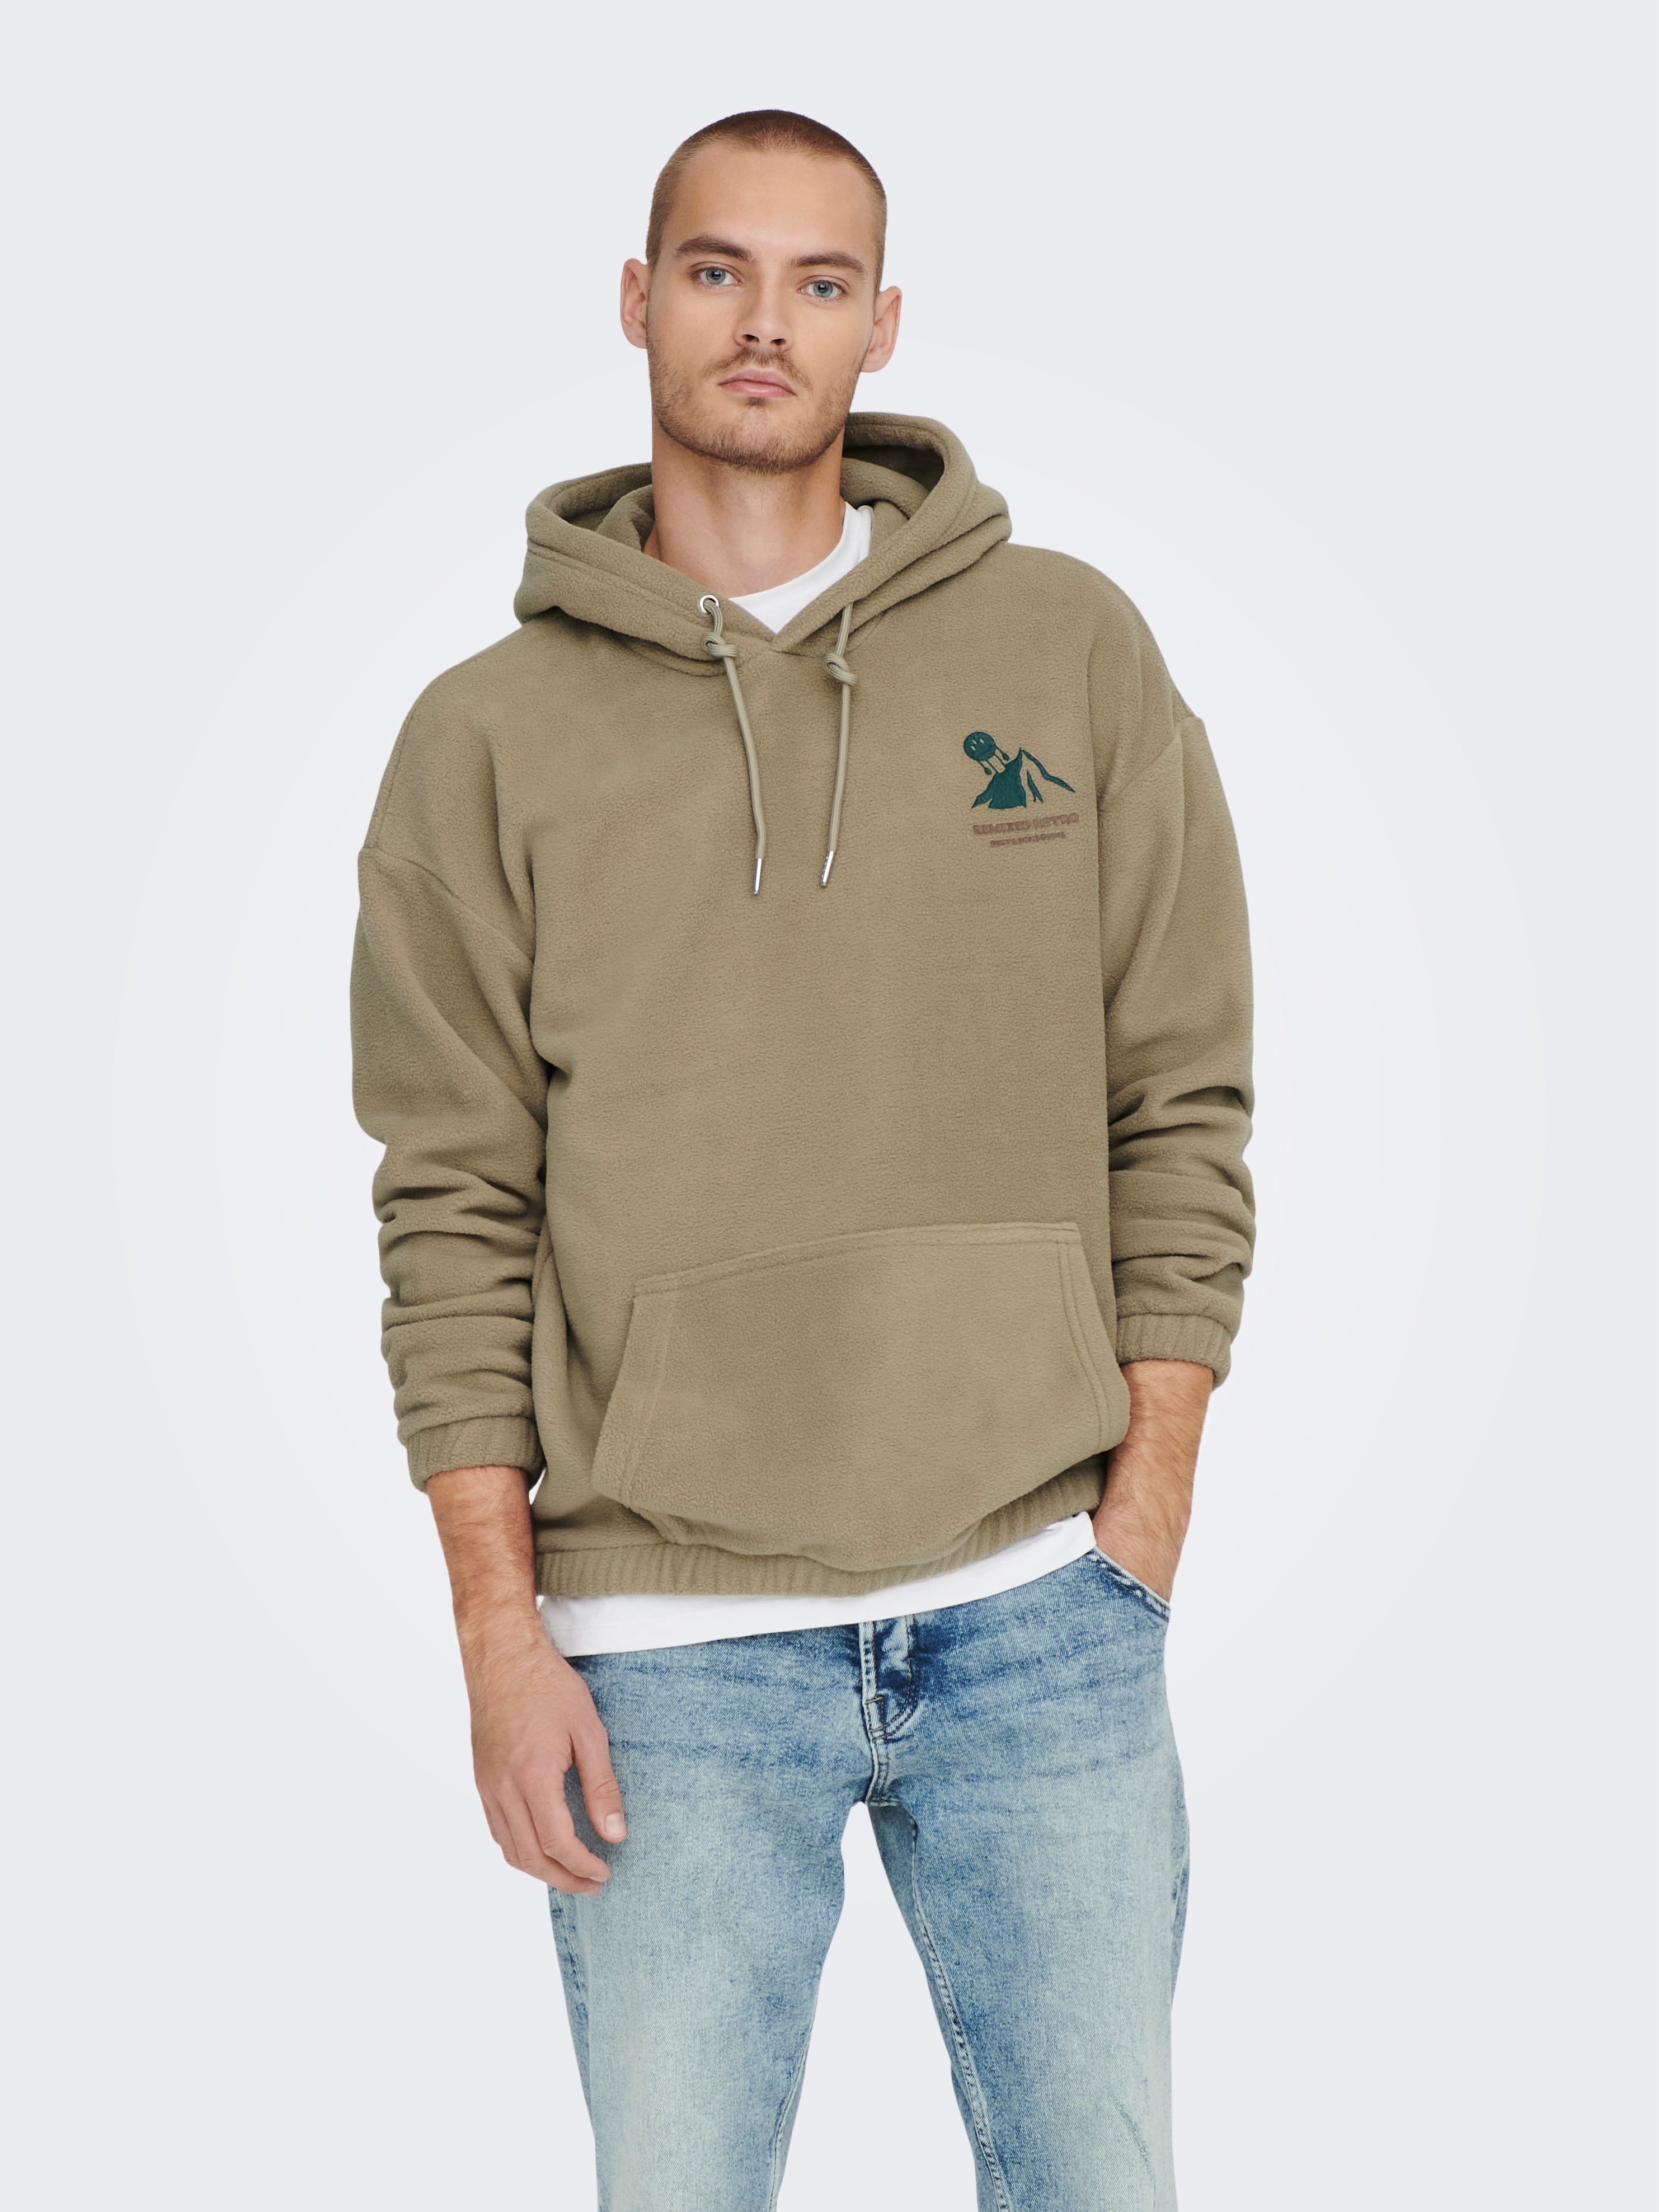 Rabatt 62 % Grün M ONLY & SONS sweatshirt HERREN Pullovers & Sweatshirts Hoodie 